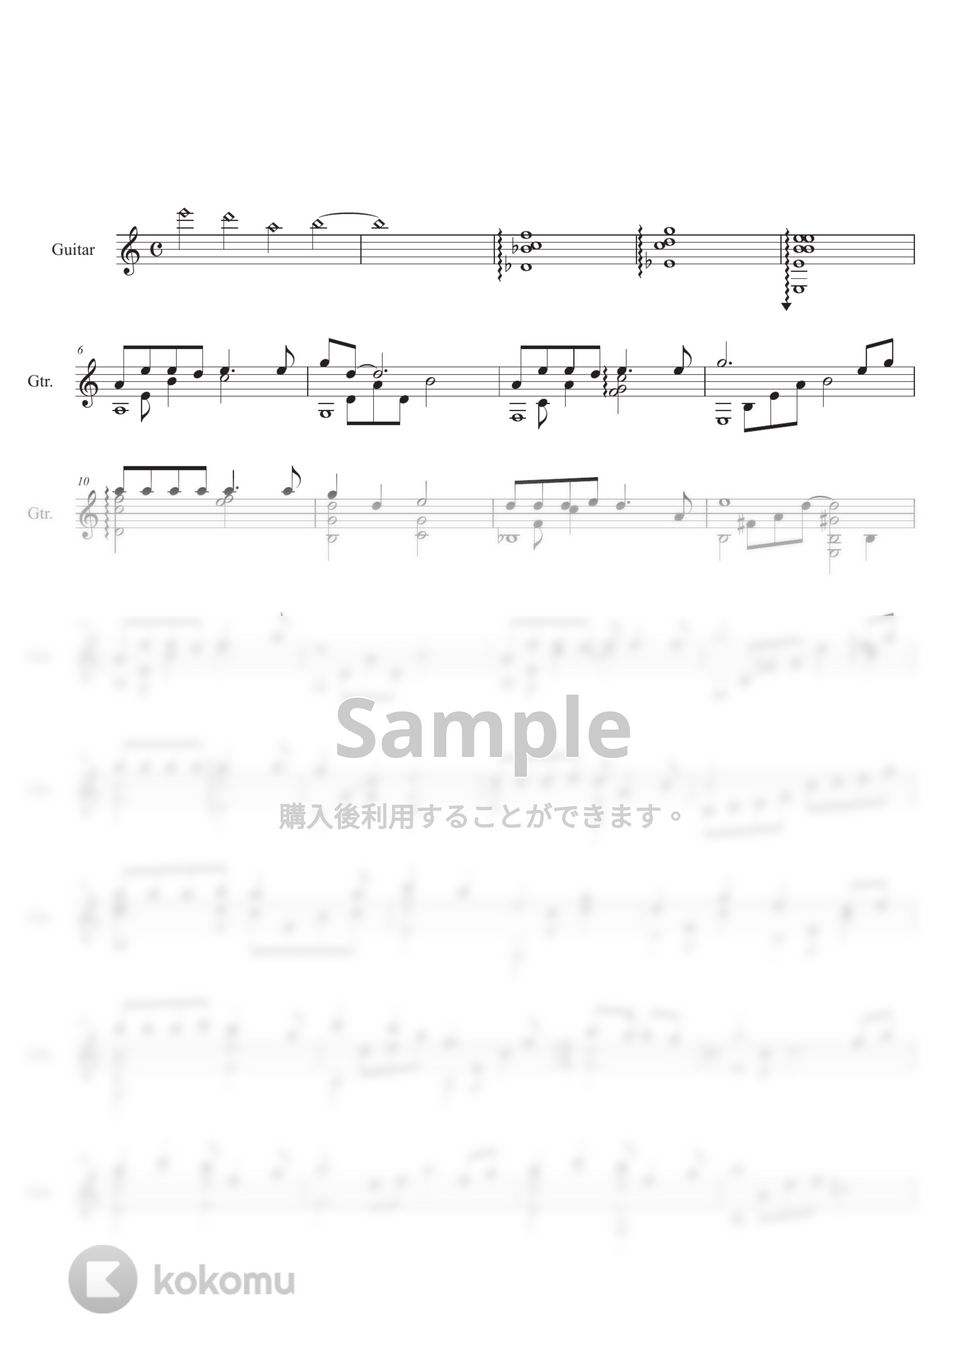 久石 譲 - もののけ姫 (ギターソロ) by Ponze Records